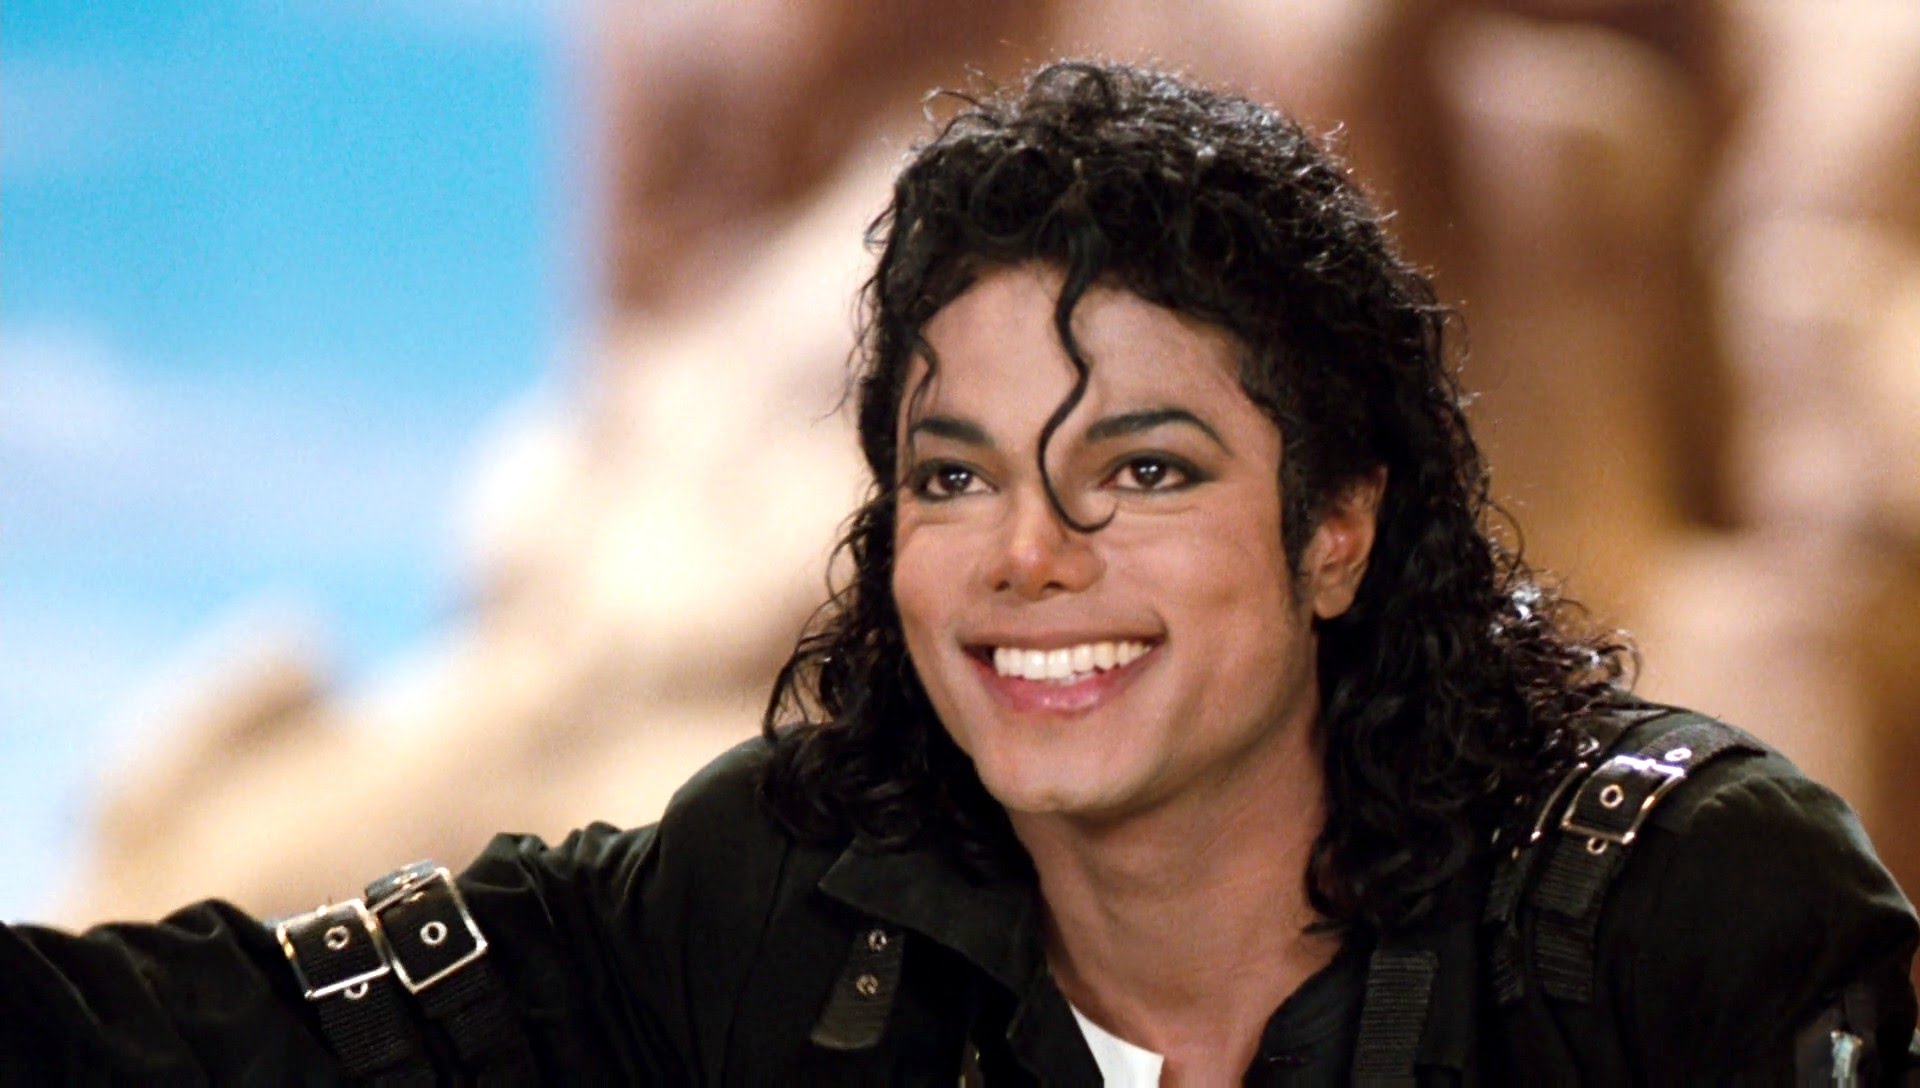 Hugo Boss venderá 100 trajes réplica de Michael Jackson para celebrar su cumpleaños. Cusica Plus.